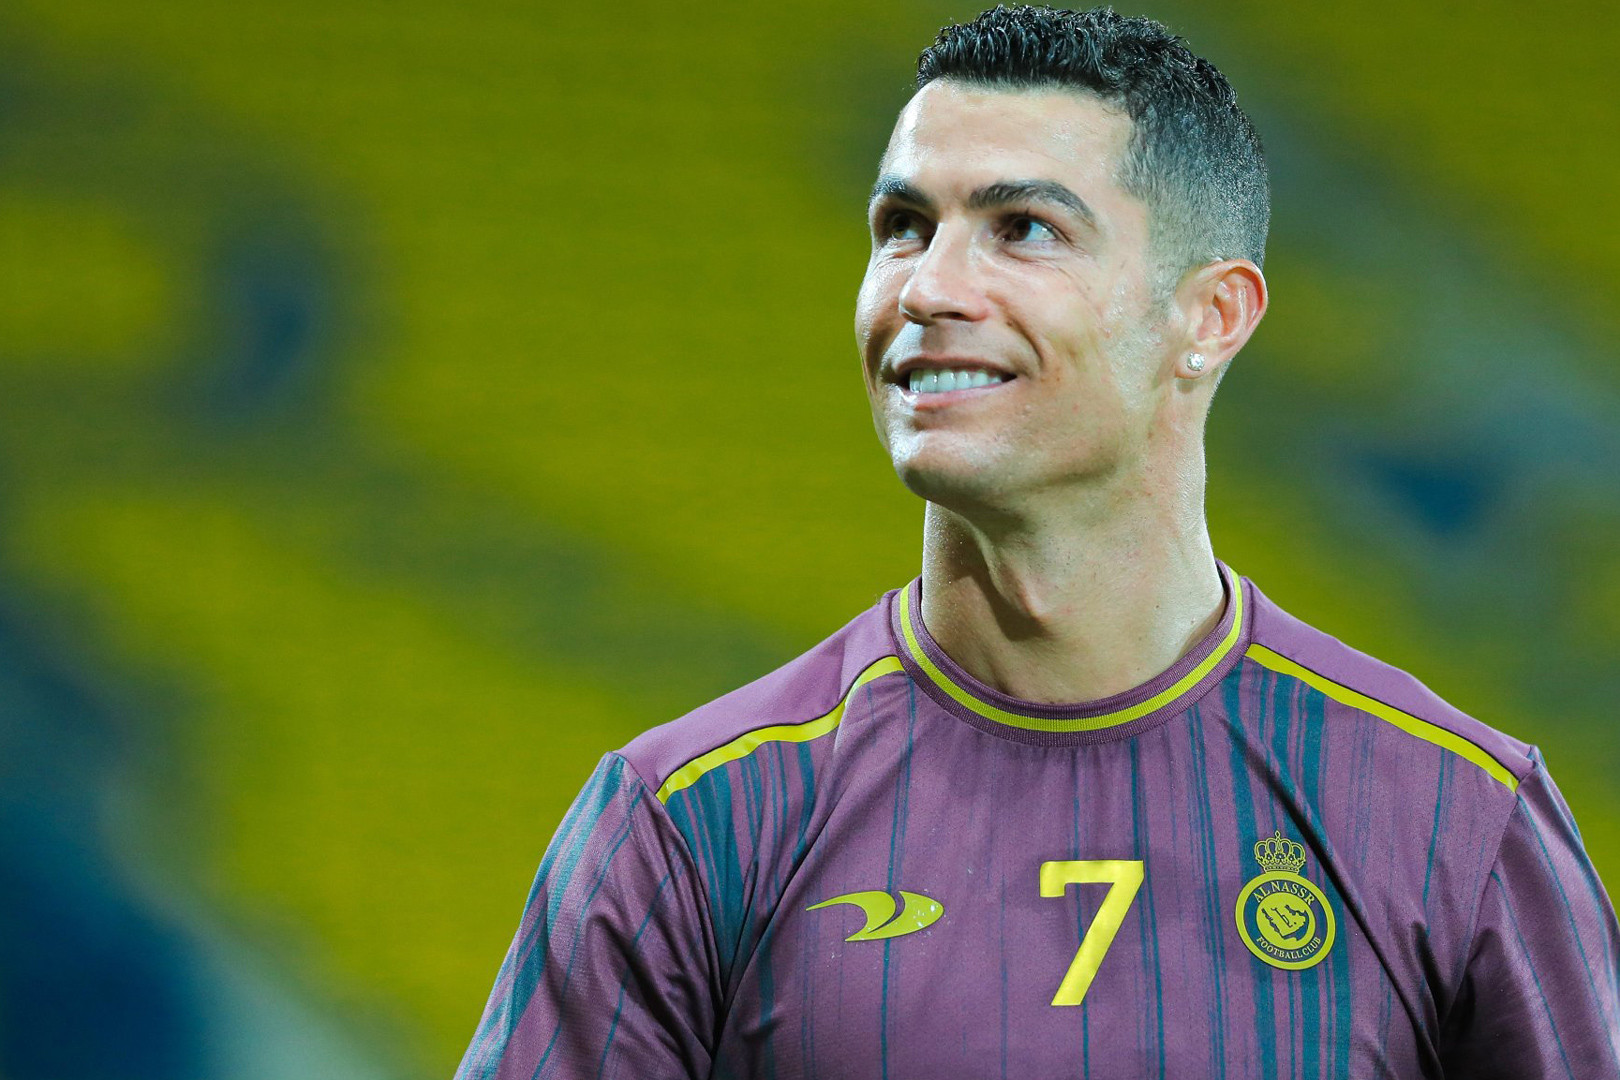 Cầu thủ ghi bàn nhiều nhất thế giới hiện tại là Ronaldo